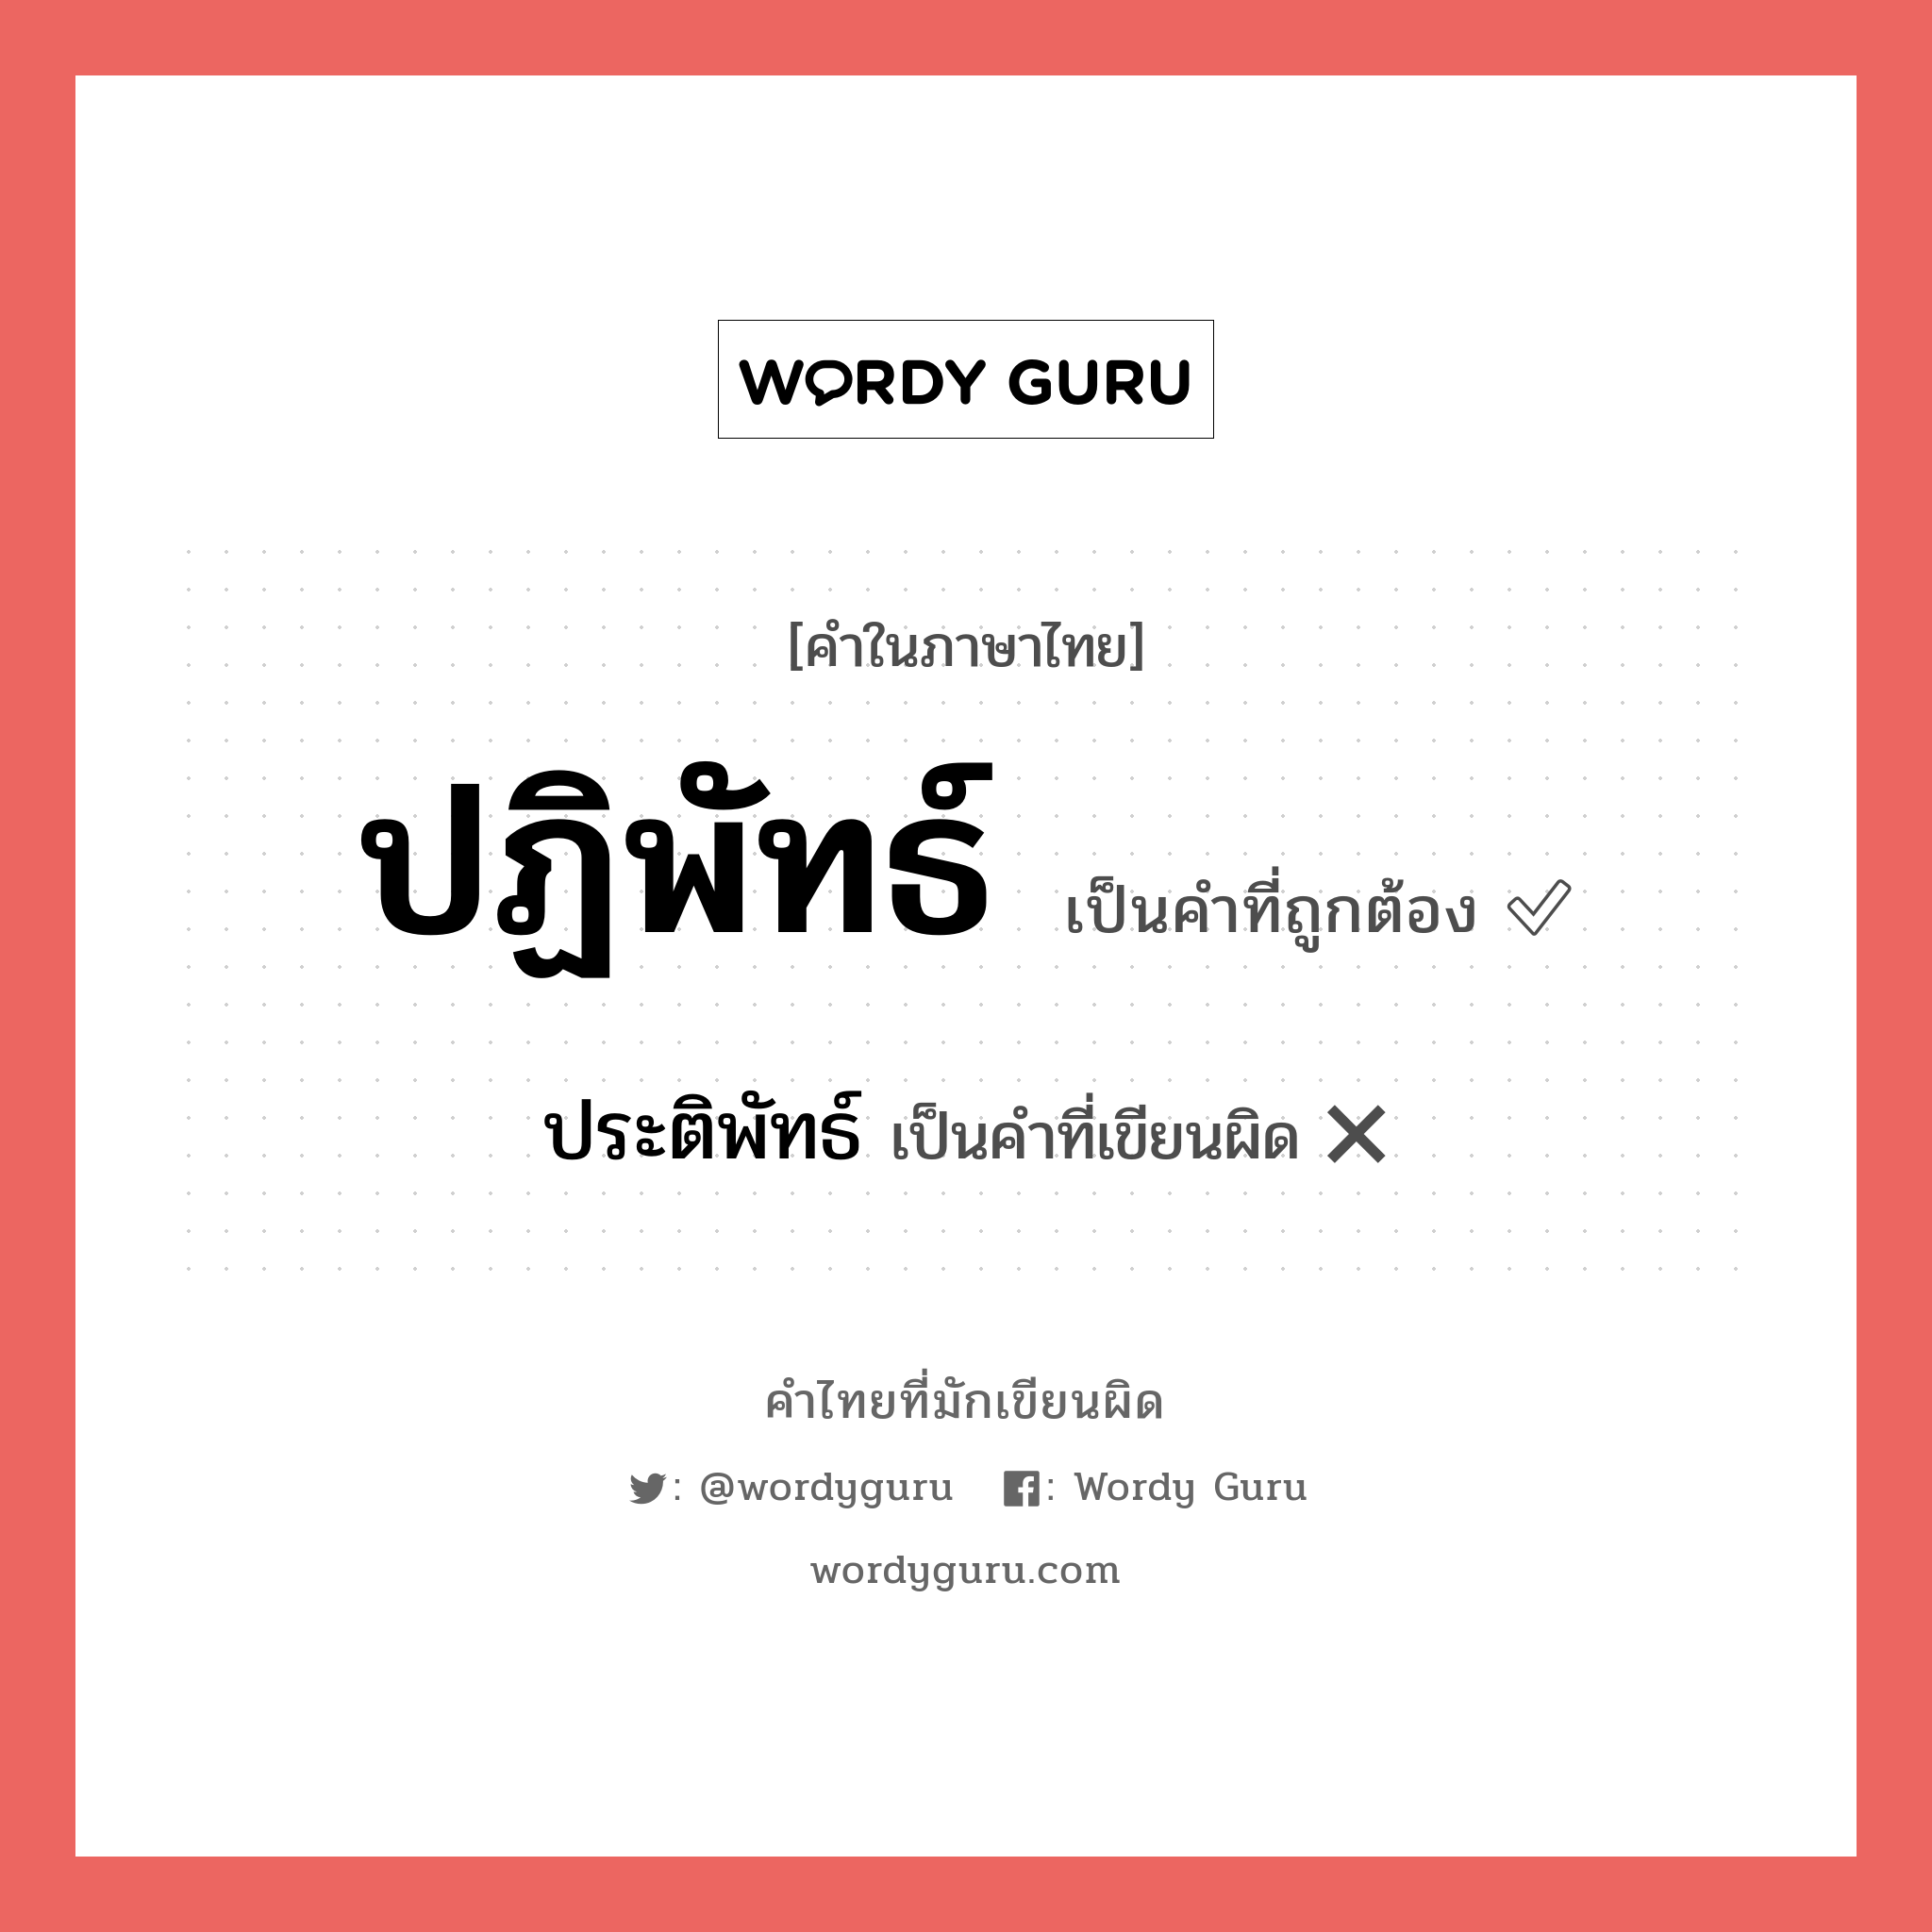 ปฏิพัทธ์ หรือ ประติพัทธ์ คำไหนเขียนถูก?, คำในภาษาไทยที่มักเขียนผิด ปฏิพัทธ์ คำที่ผิด ❌ ประติพัทธ์